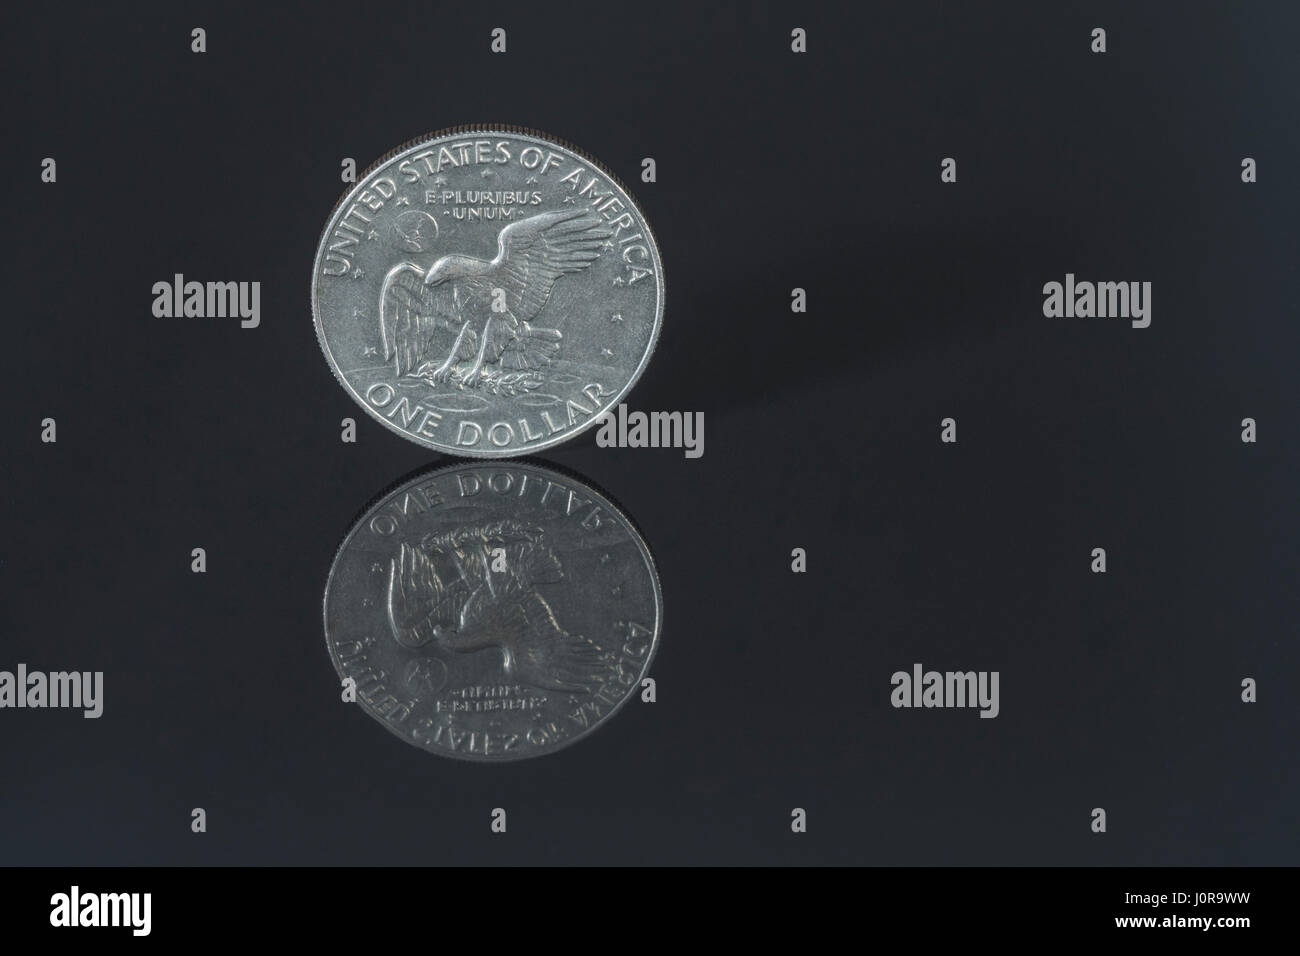 1-Dollar- / $1-Dollar-Münze AUF dunklem Hintergrund - für den Wechselkurs Dollar / US-Dollar / Dollar, US-Finanzmärkte, US-Bankenkrise. Stockfoto